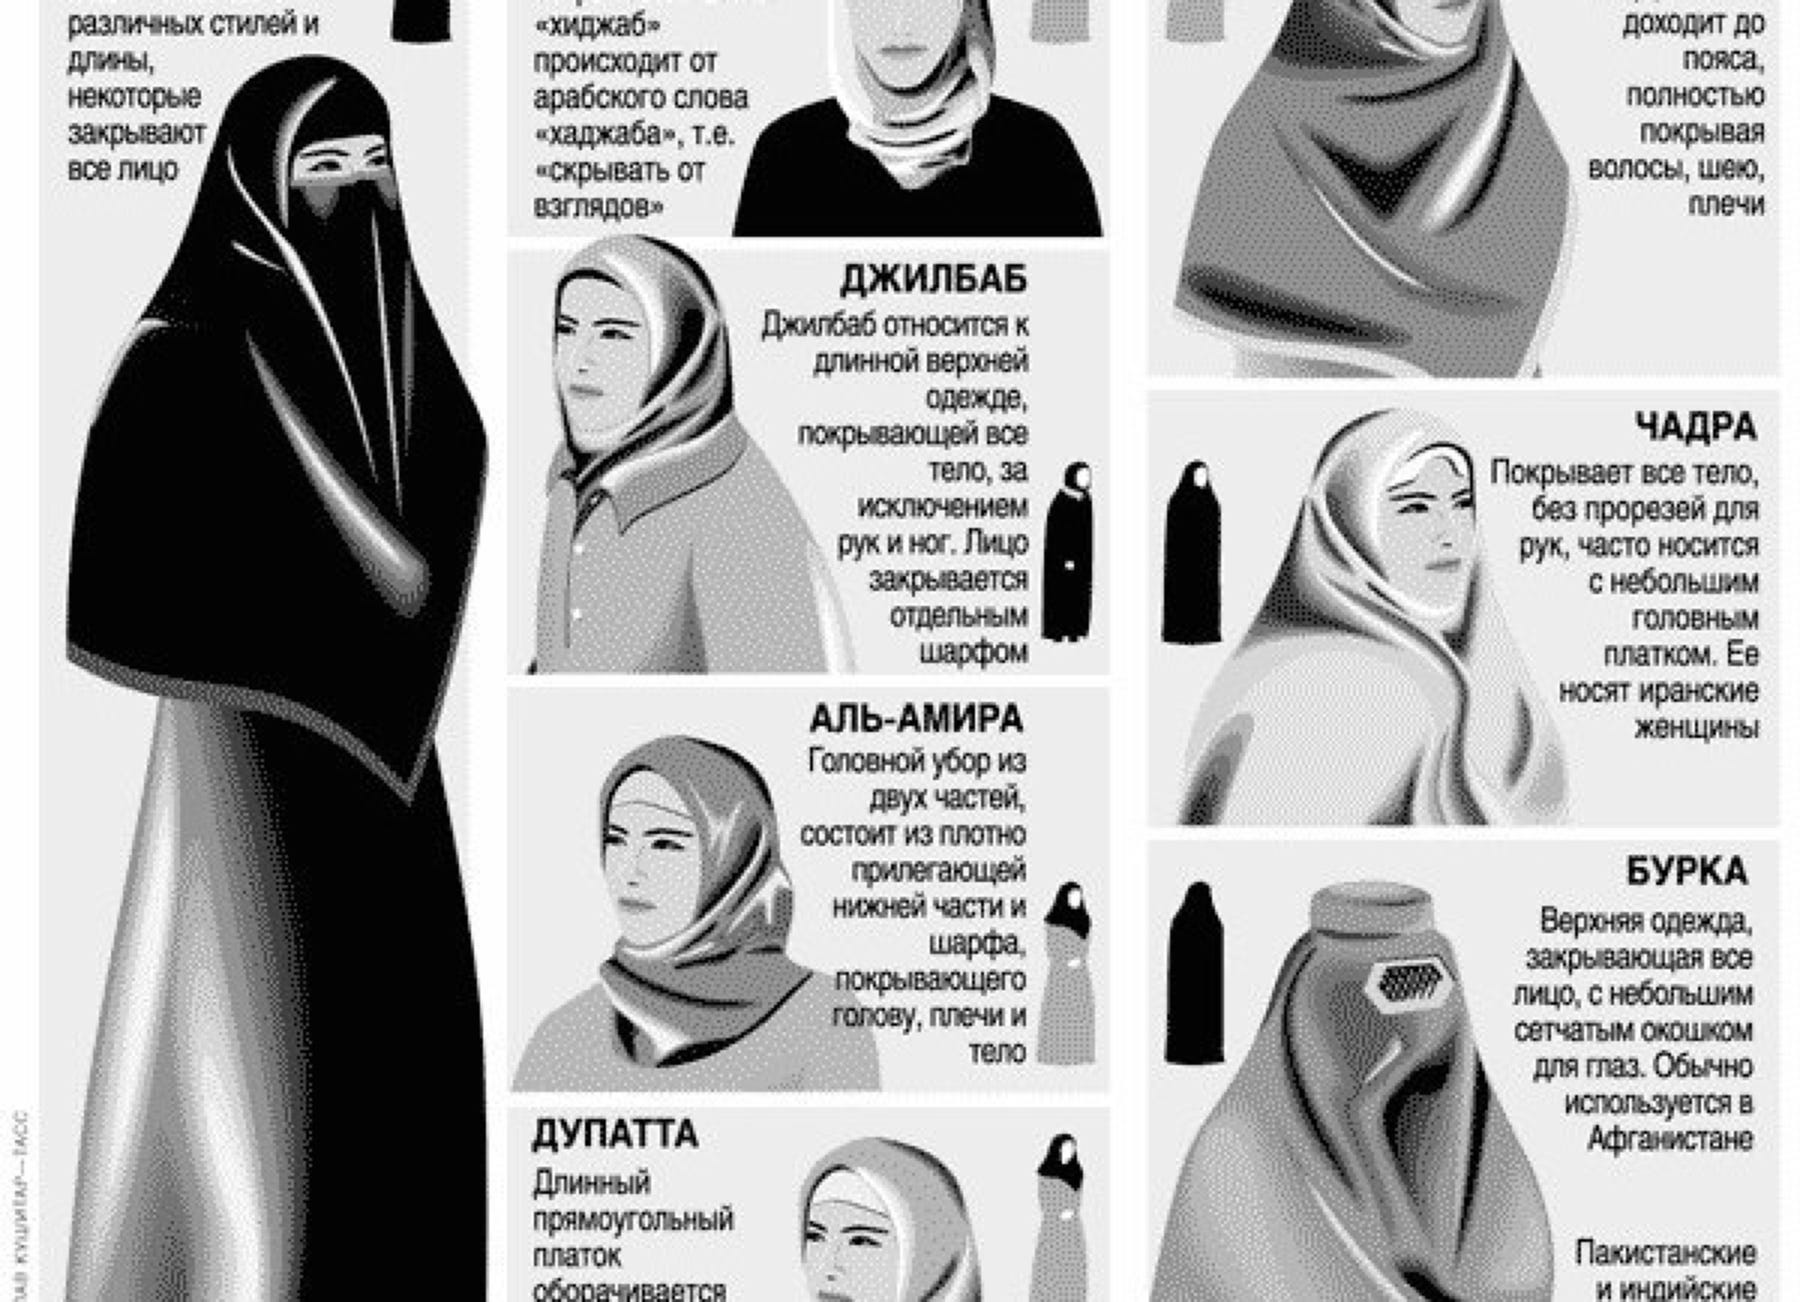 Мусульманский часть. Бурка паранджа никаб. Никаб хиджаб паранджа. Хиджаб паранджа чадра никаб отличия. Бурка хиджаб никаб паранджа.